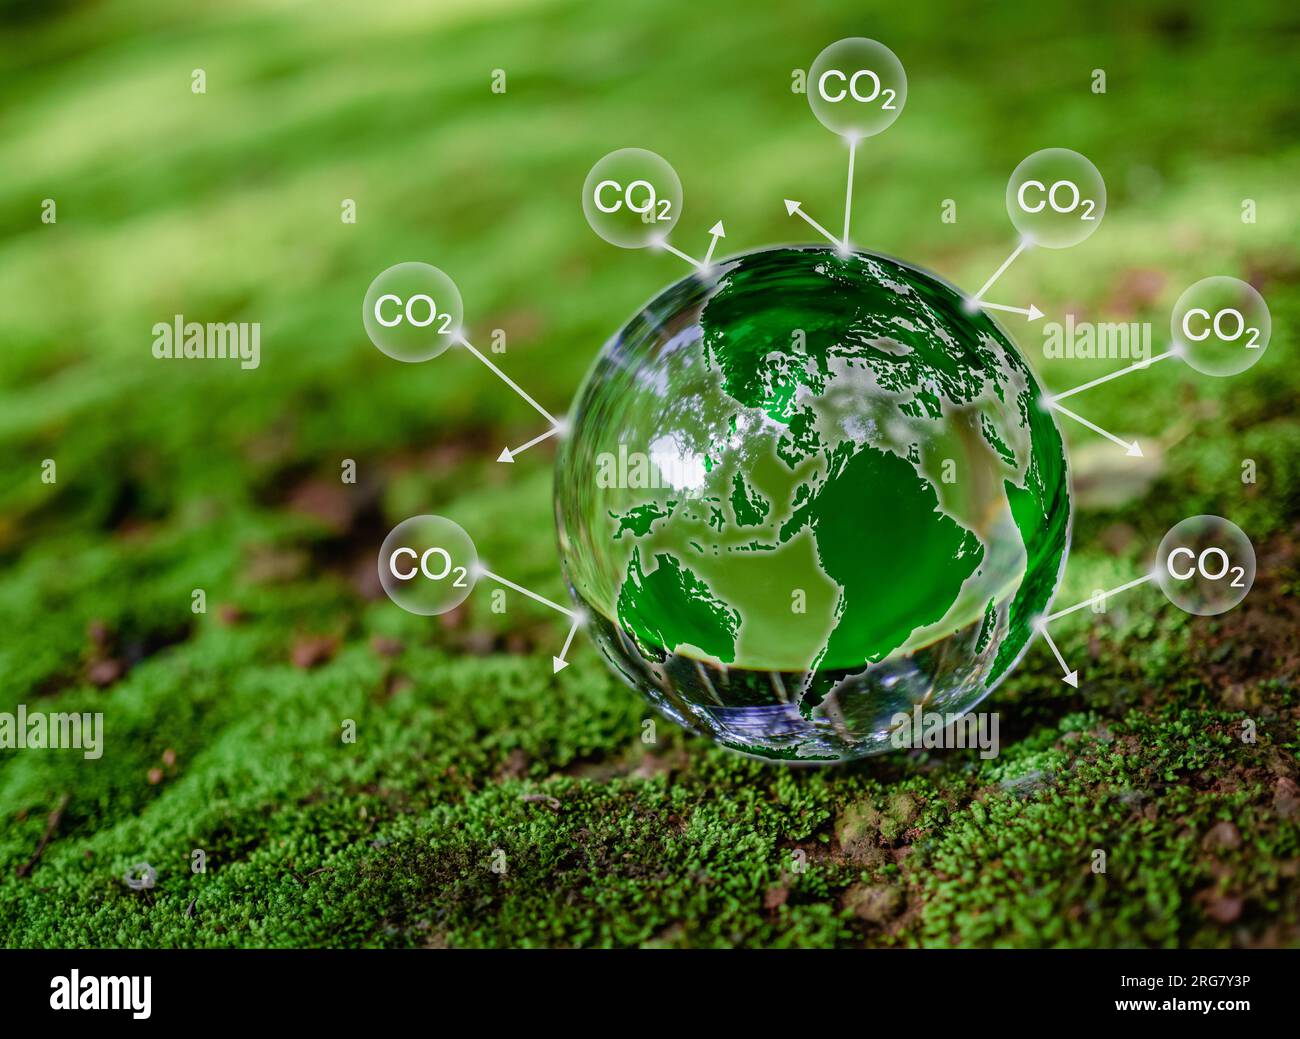 Kristallkugel auf Moos im grünen Wald. Konzept zur Reduzierung der CO2-Emissionen, saubere und umweltfreundliche Umwelt ohne Kohlendioxidemissionen. Bäume Pflanzen Stockfoto